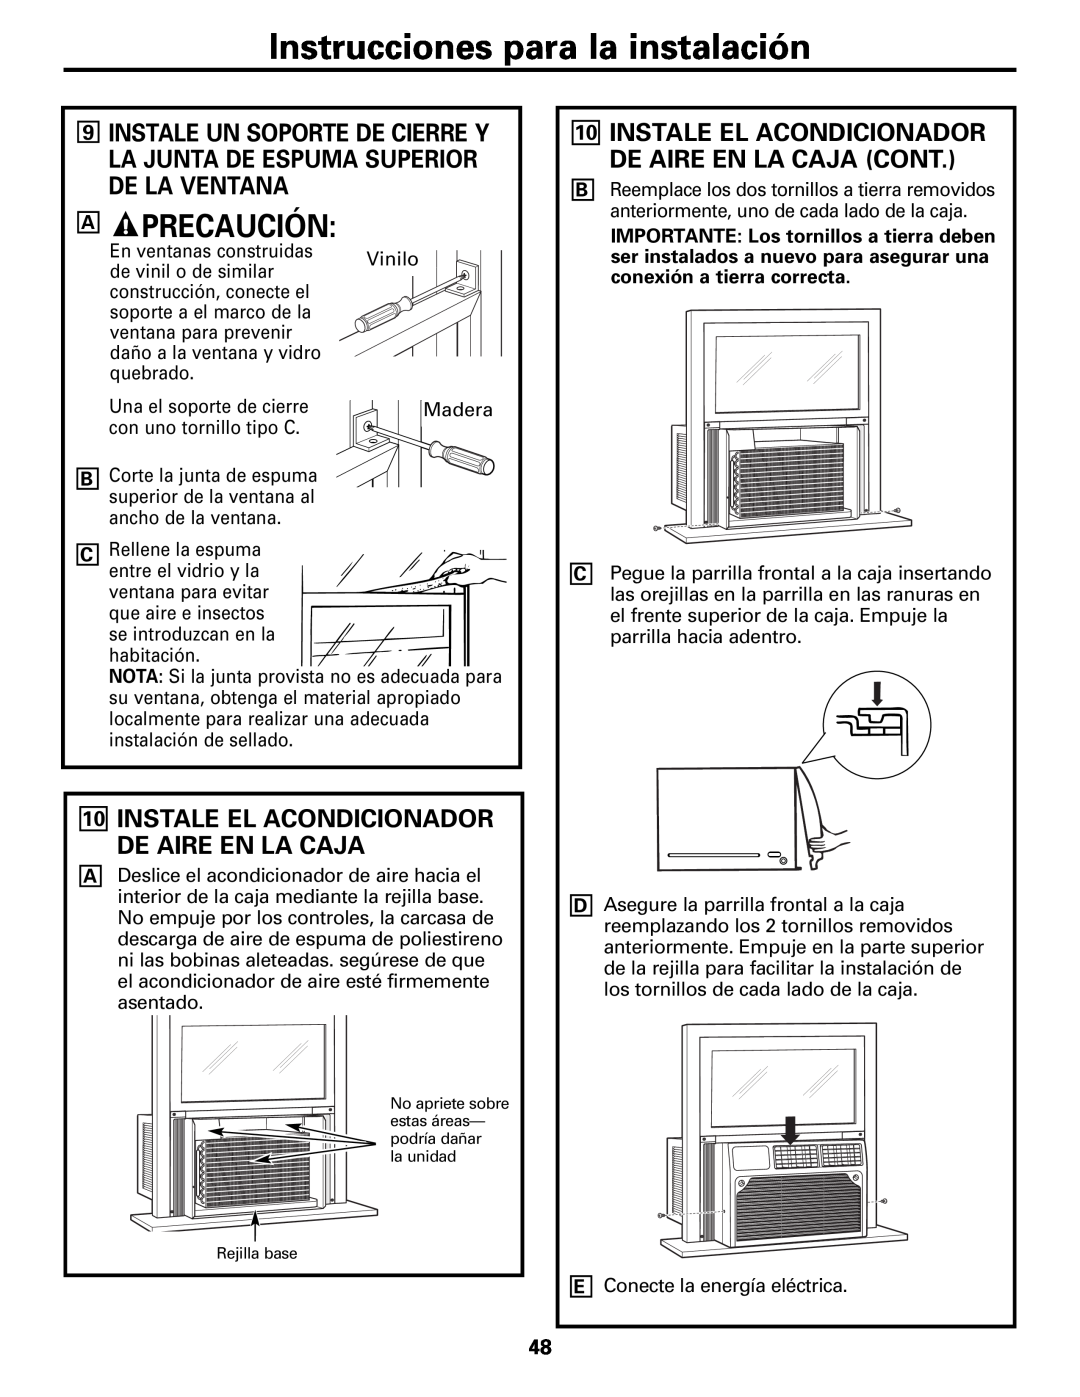 GE AEM10 owner manual Instale El Acondicionador De Aire En La Caja Cont, Instrucciones para la instalación, Precaución 